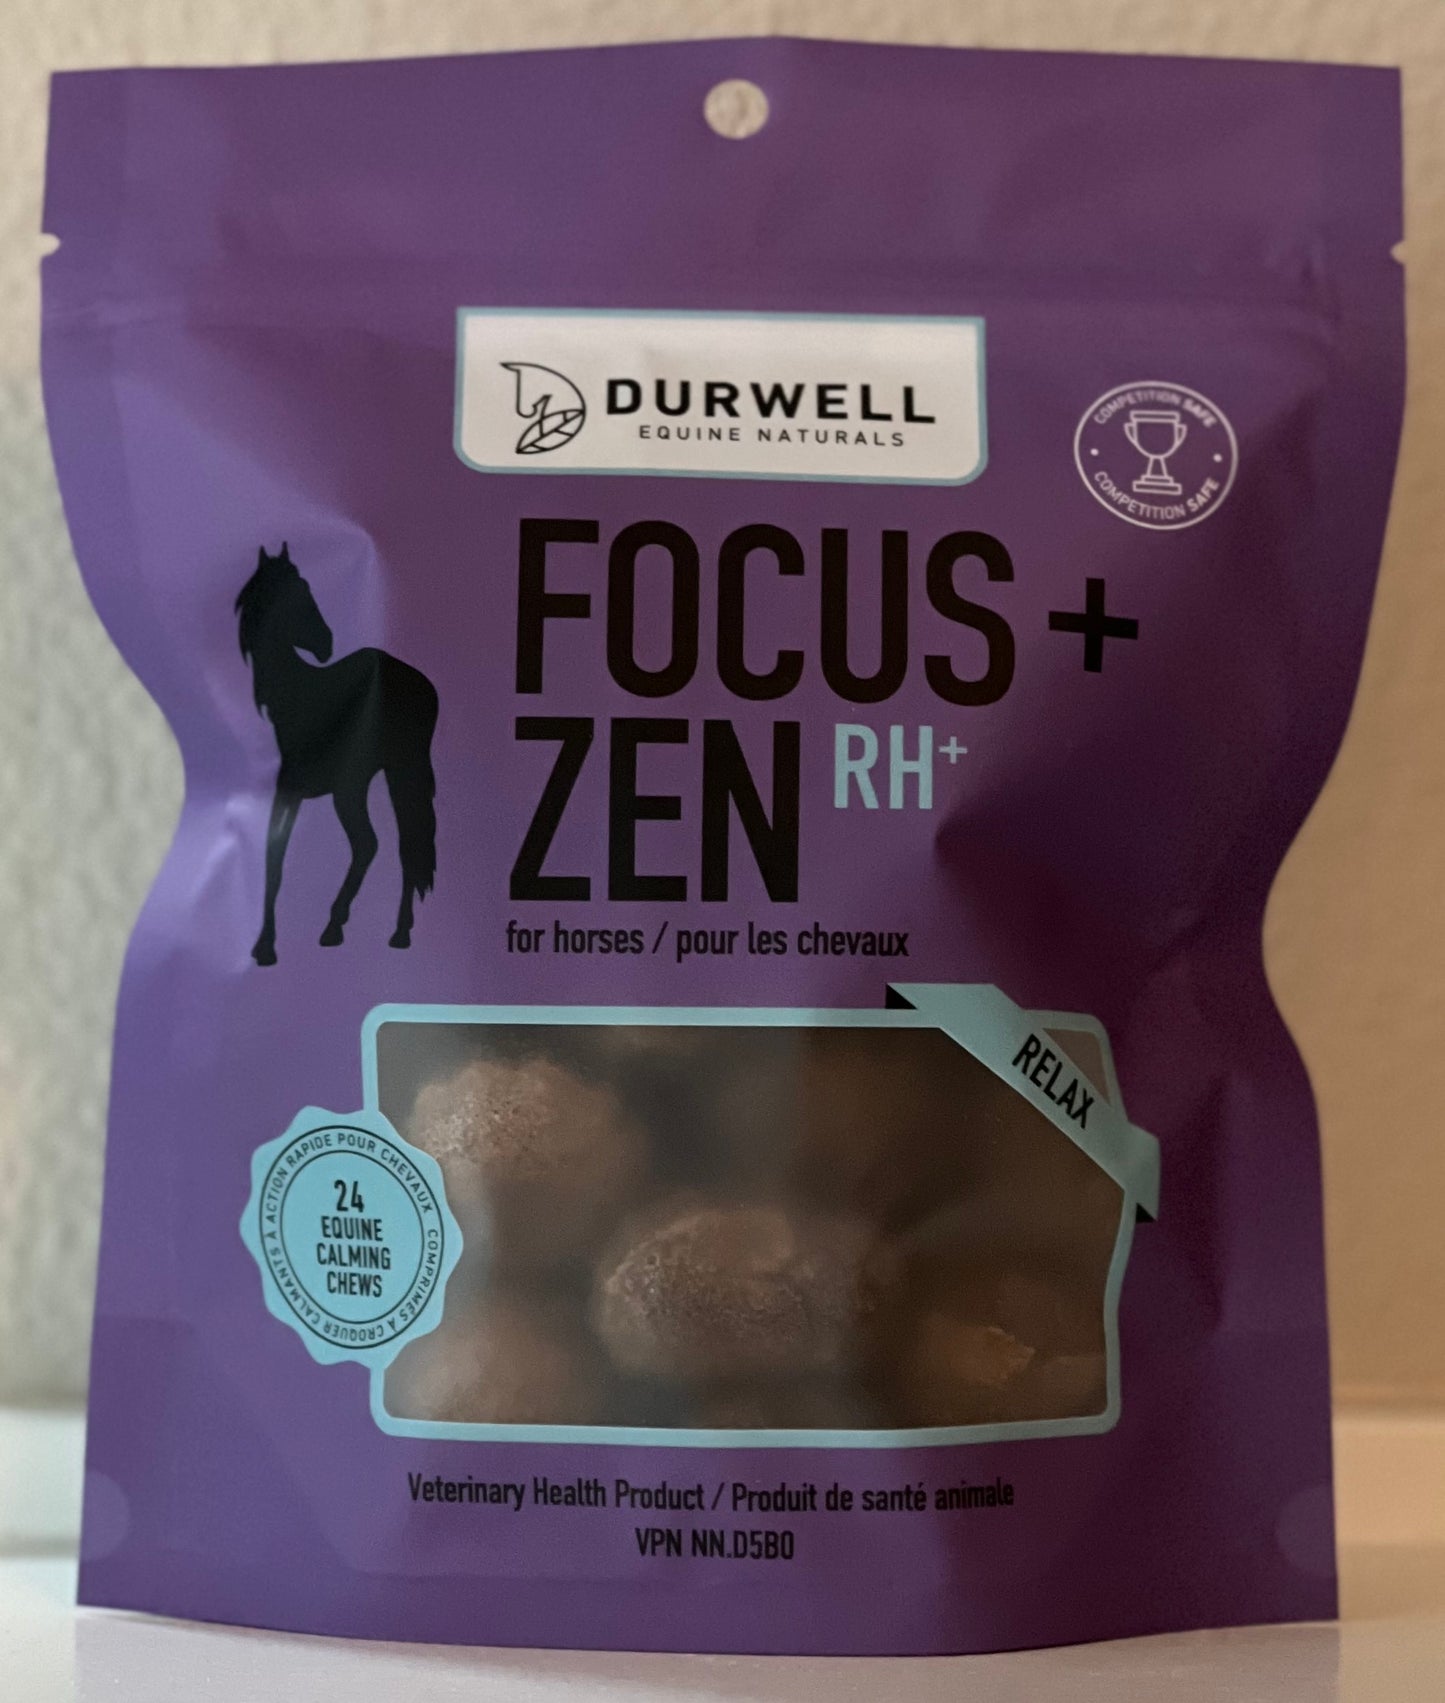 Focus + Zen RH+ Calming Chews for Horses